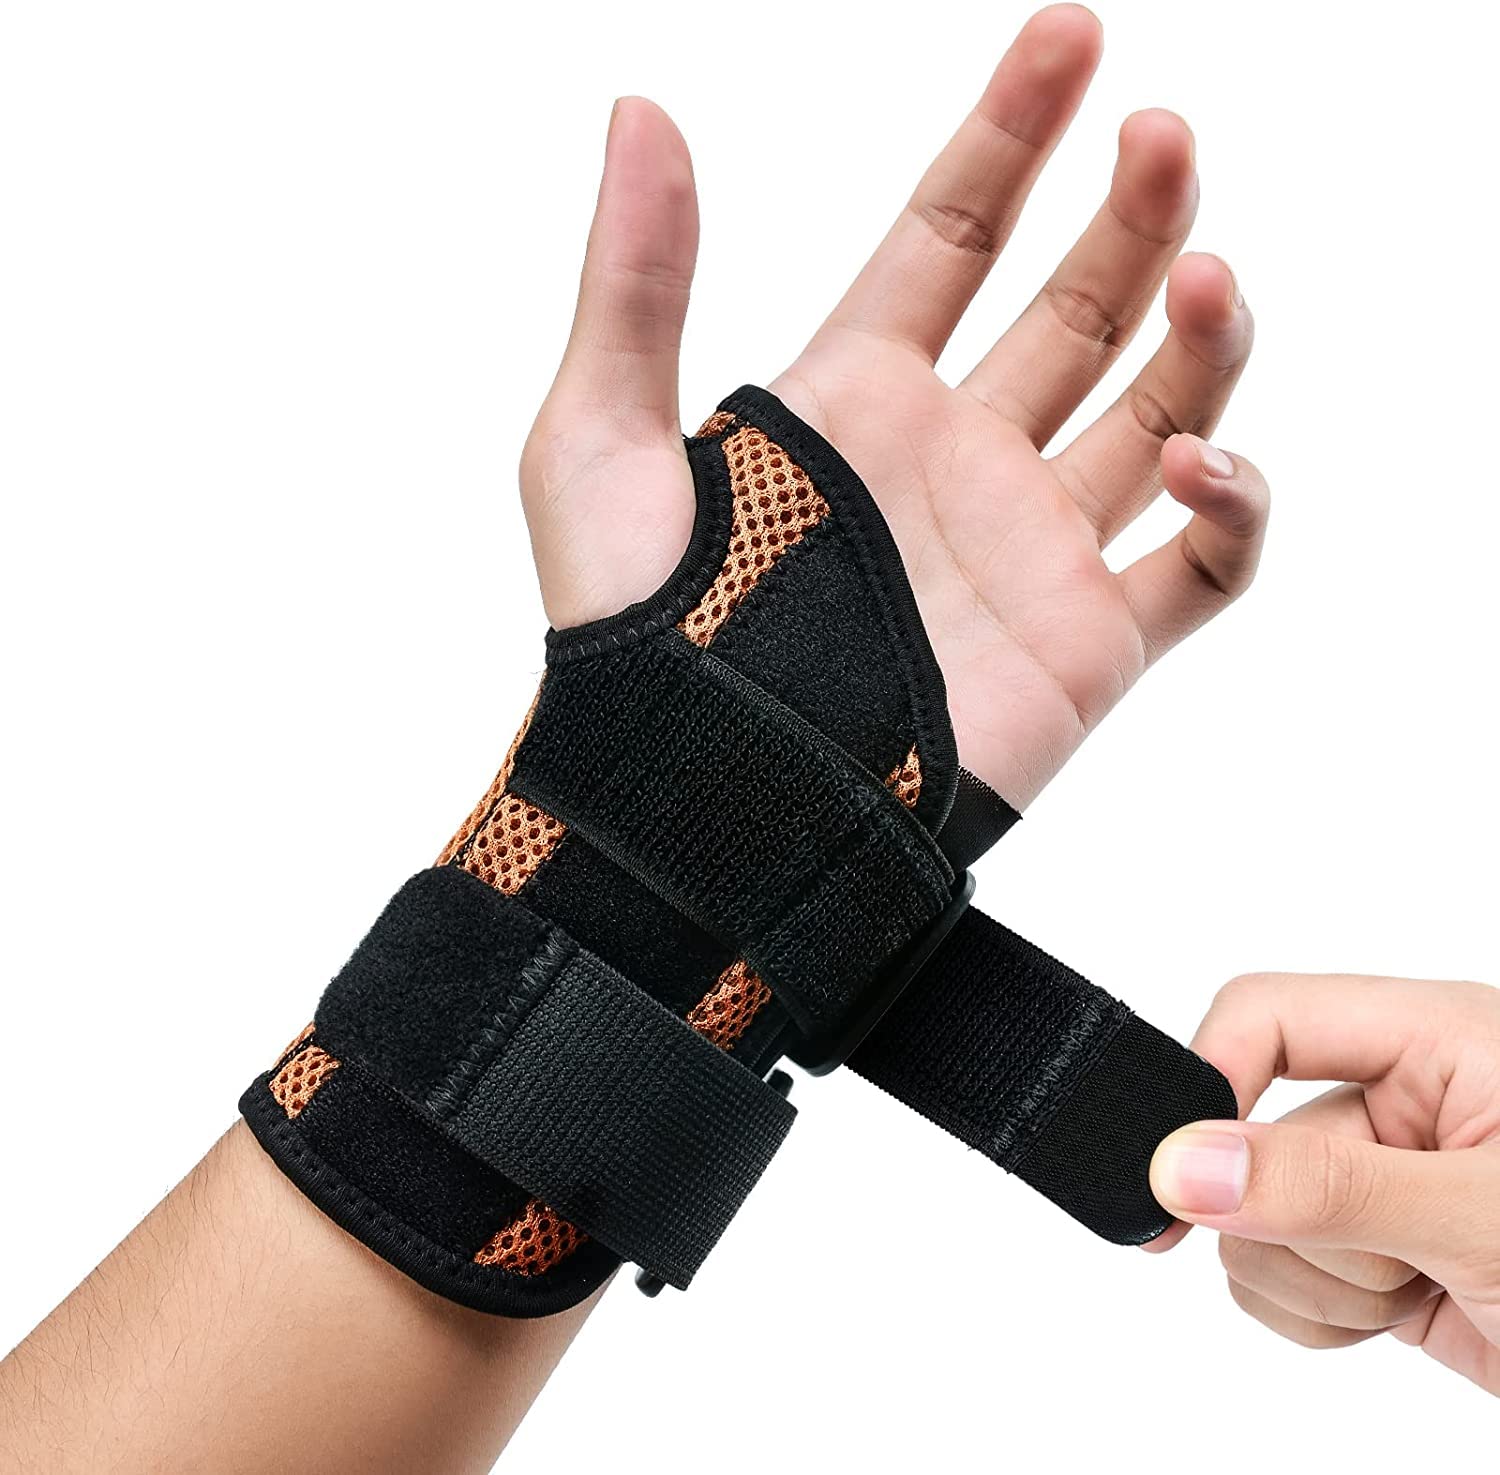 Wrist Bandage, Size M, Wrist Brace, Wrist Protection